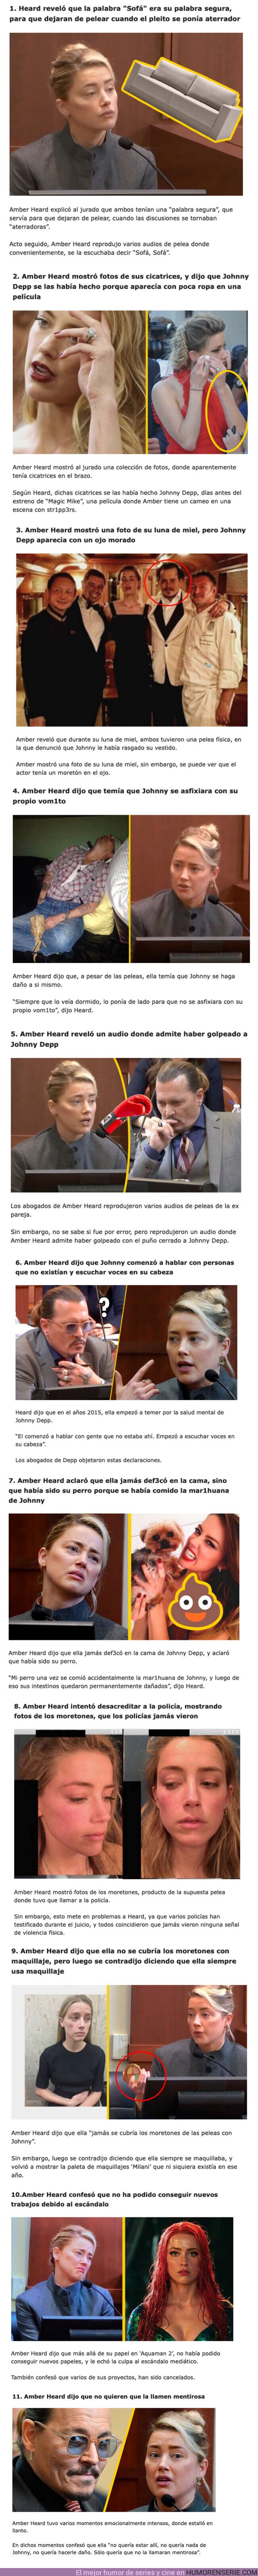 99322 - GALERÍA: 11 locuras reveladas en el DÍA 16 de juicio entre Amber Heard y Johnny Depp